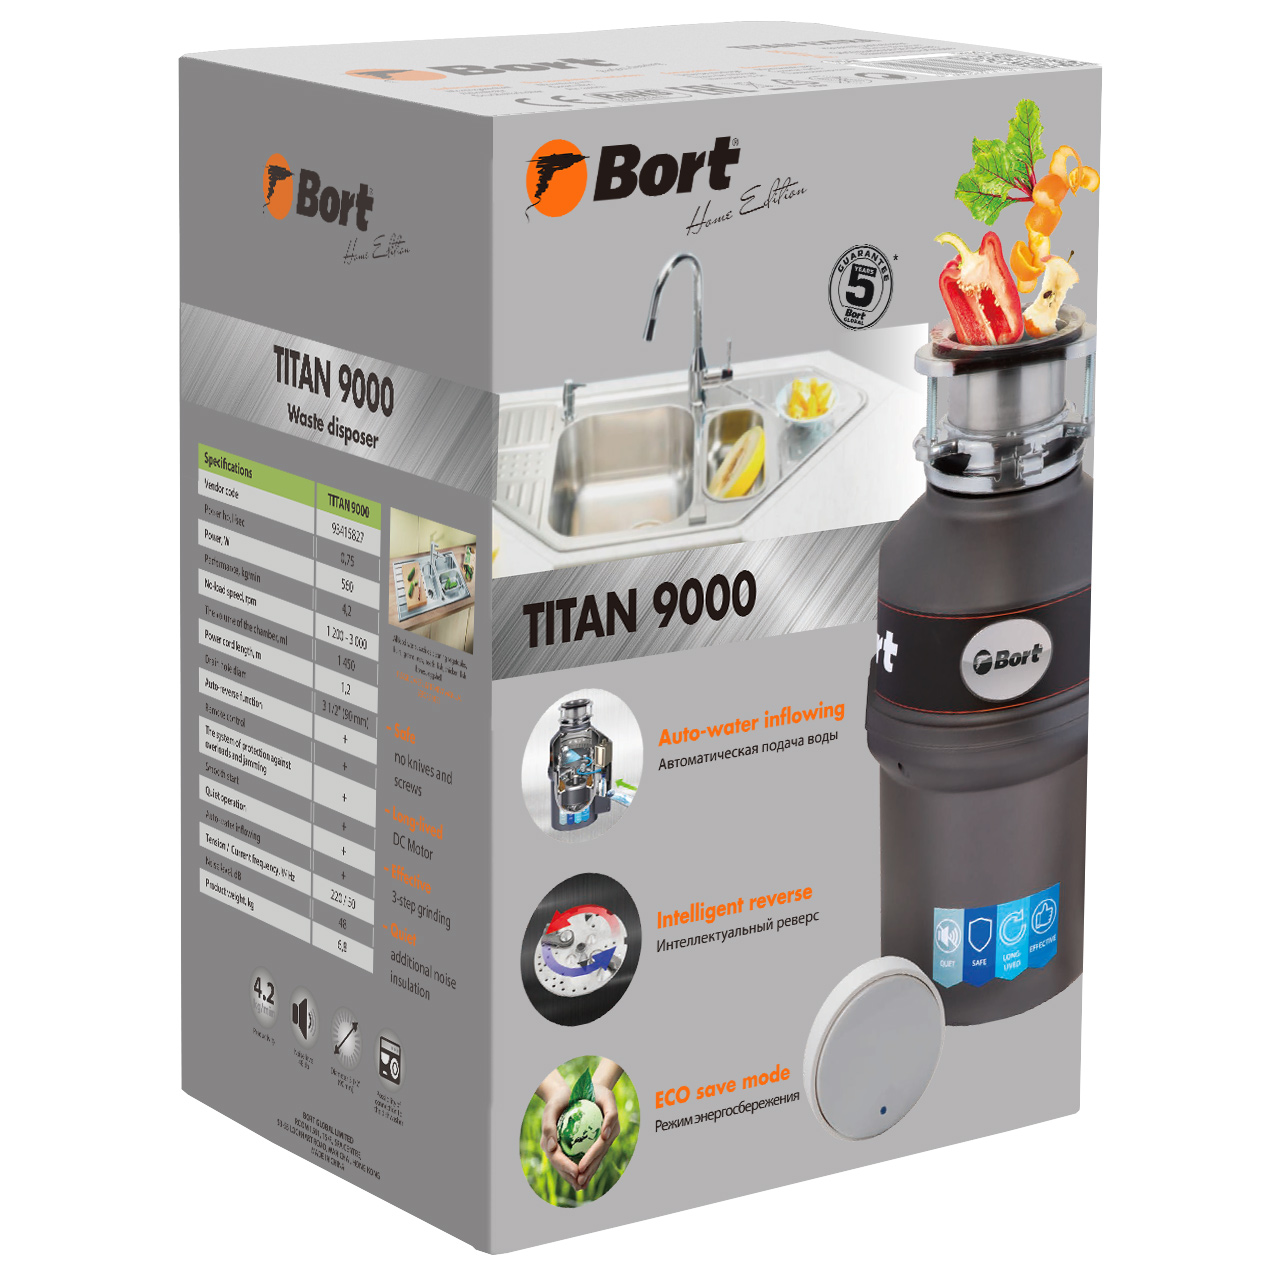 Измельчитель пищевых отходов BORT TITAN 9000